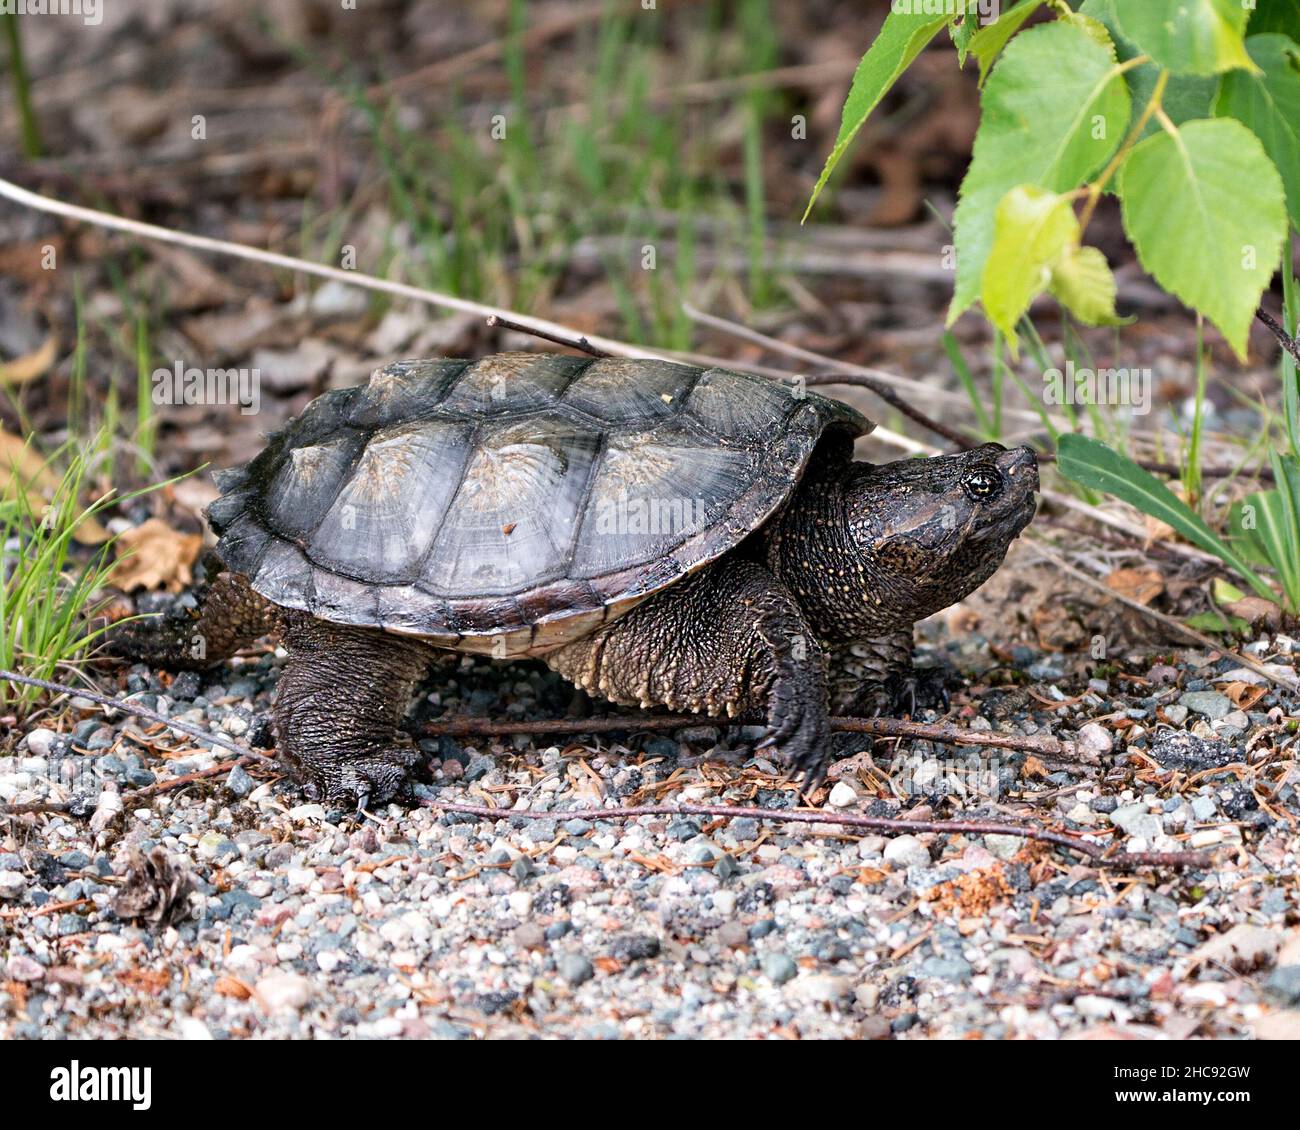 Schnappschildkröte Nahaufnahme Profilansicht Wandern auf Schotter in seiner Umgebung und Umgebung mit Drachenschwanz, Schildkrötenpanzer, Pfoten, Nägeln. Stockfoto